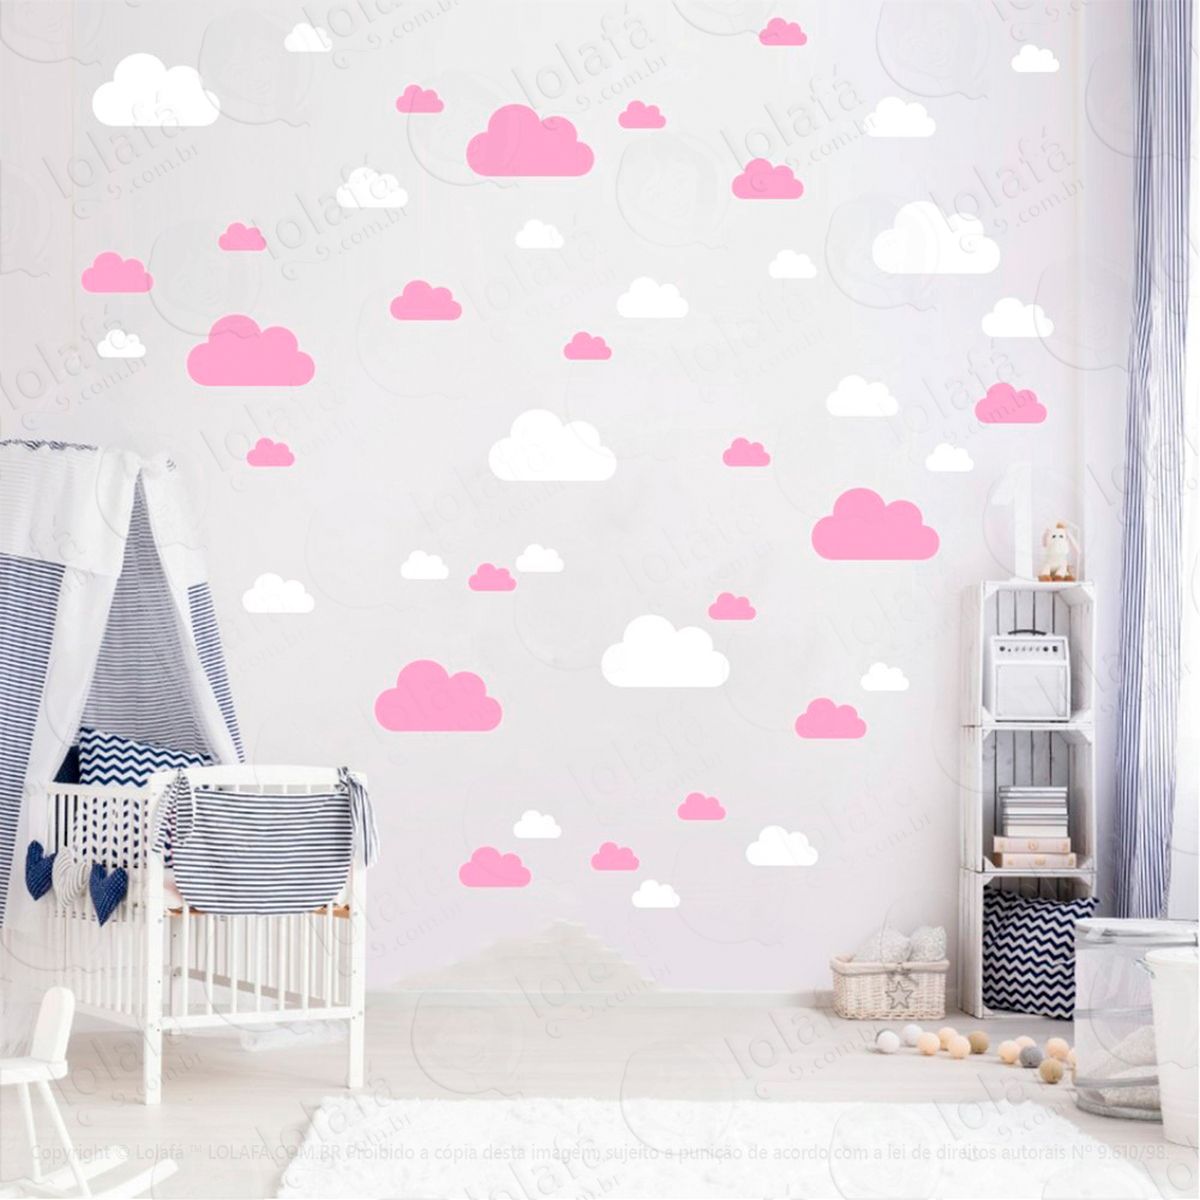 adesivos nuvens 78 peças adesivos para quarto de bebê infantil - mod:772